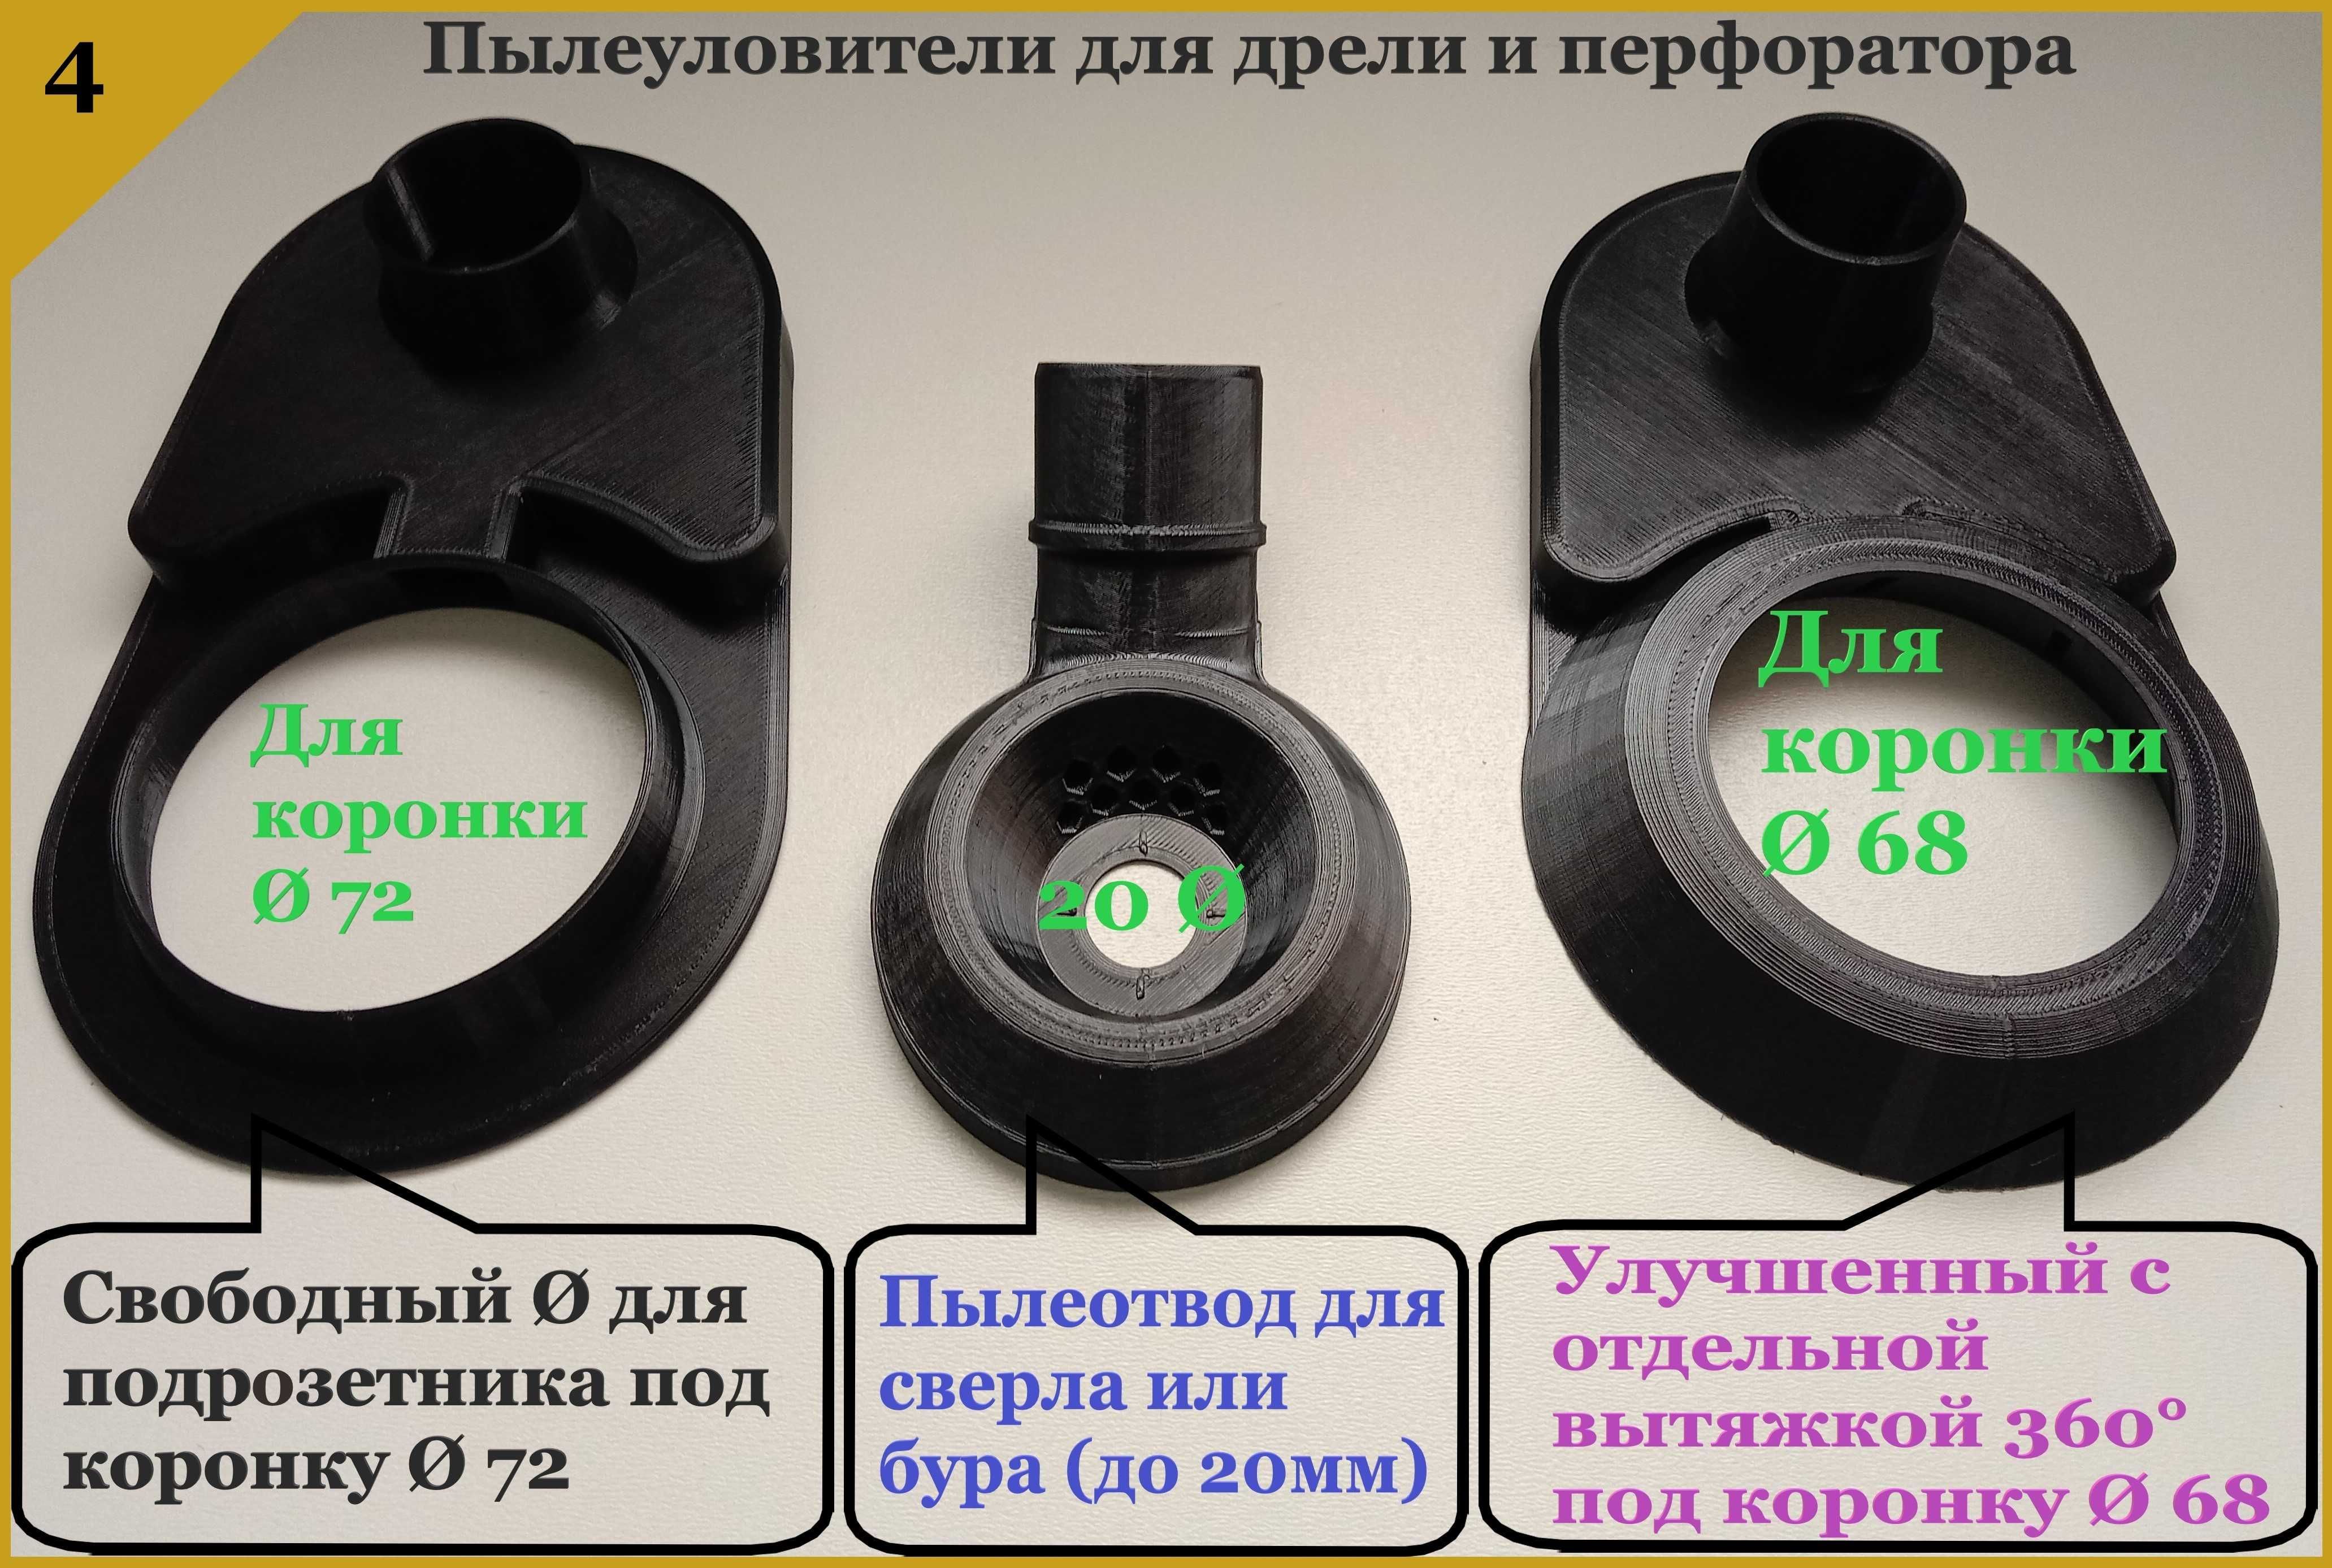 Пылеуловители, пылеотводы на УШМ 125/230, болгарку, перфоратор, дрель.